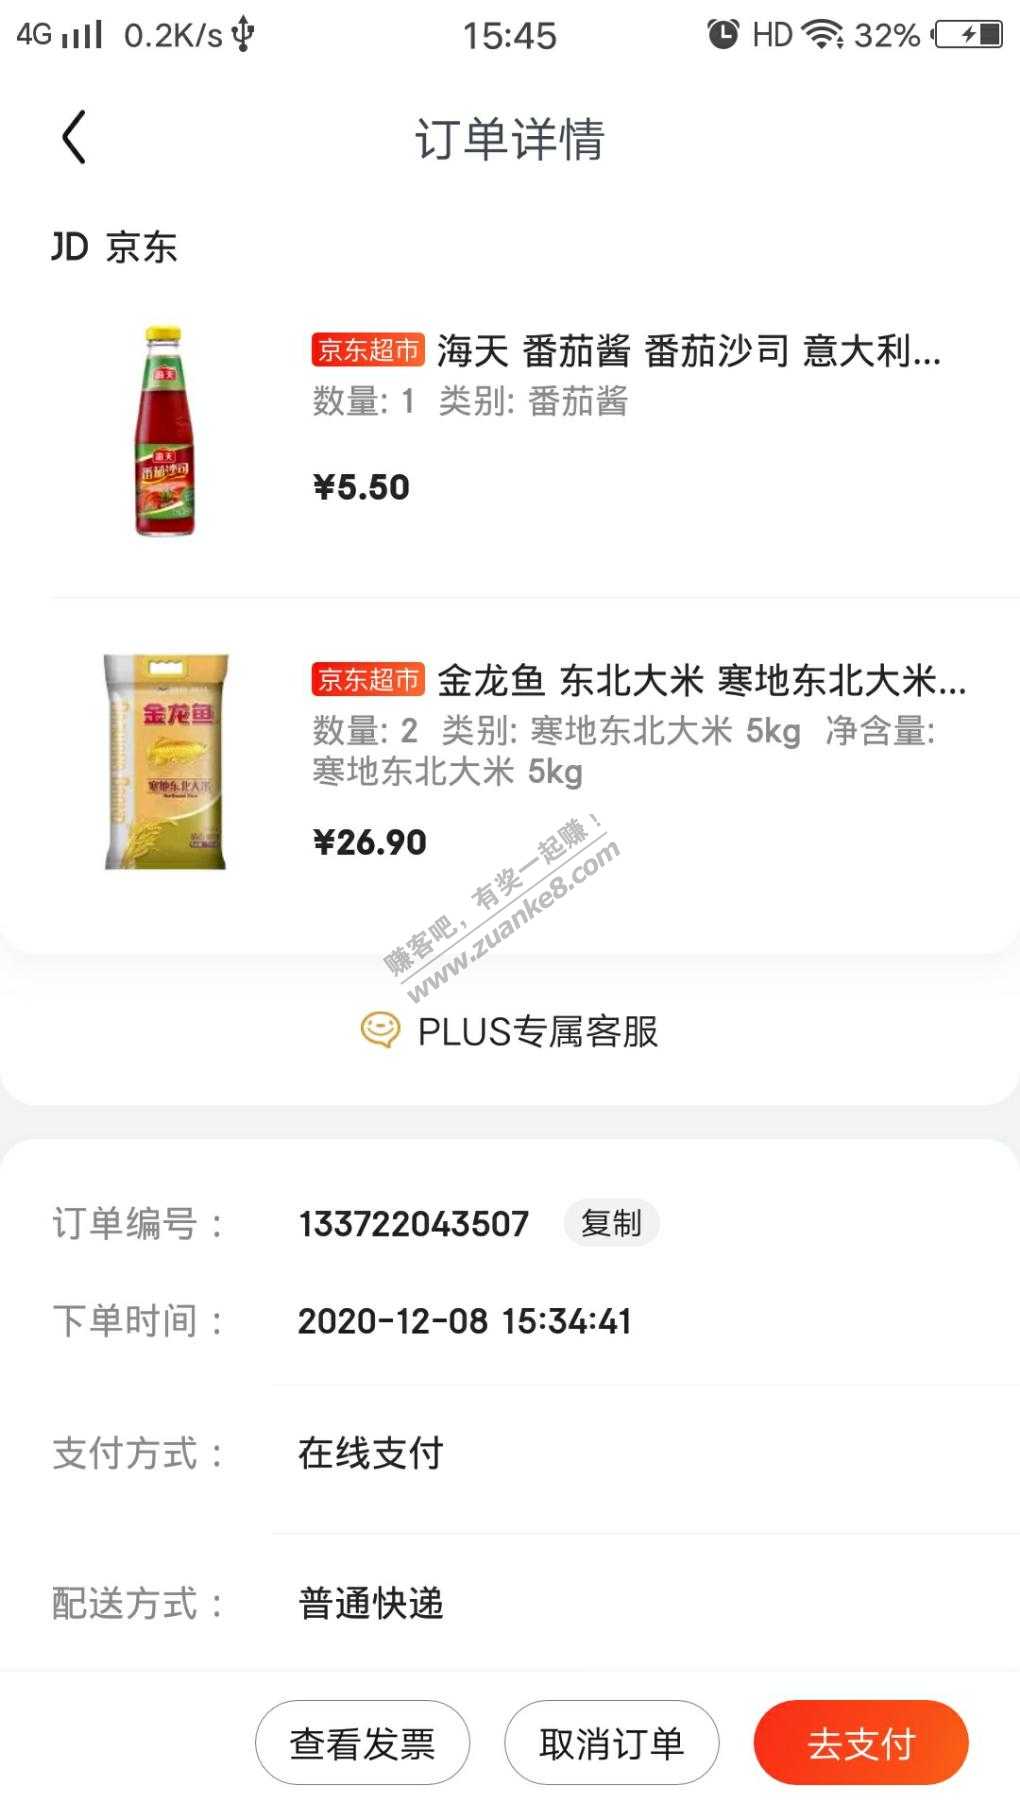 59-20下了两包5kg金龙鱼大米-凑一个番茄酱-33.9-惠小助(52huixz.com)